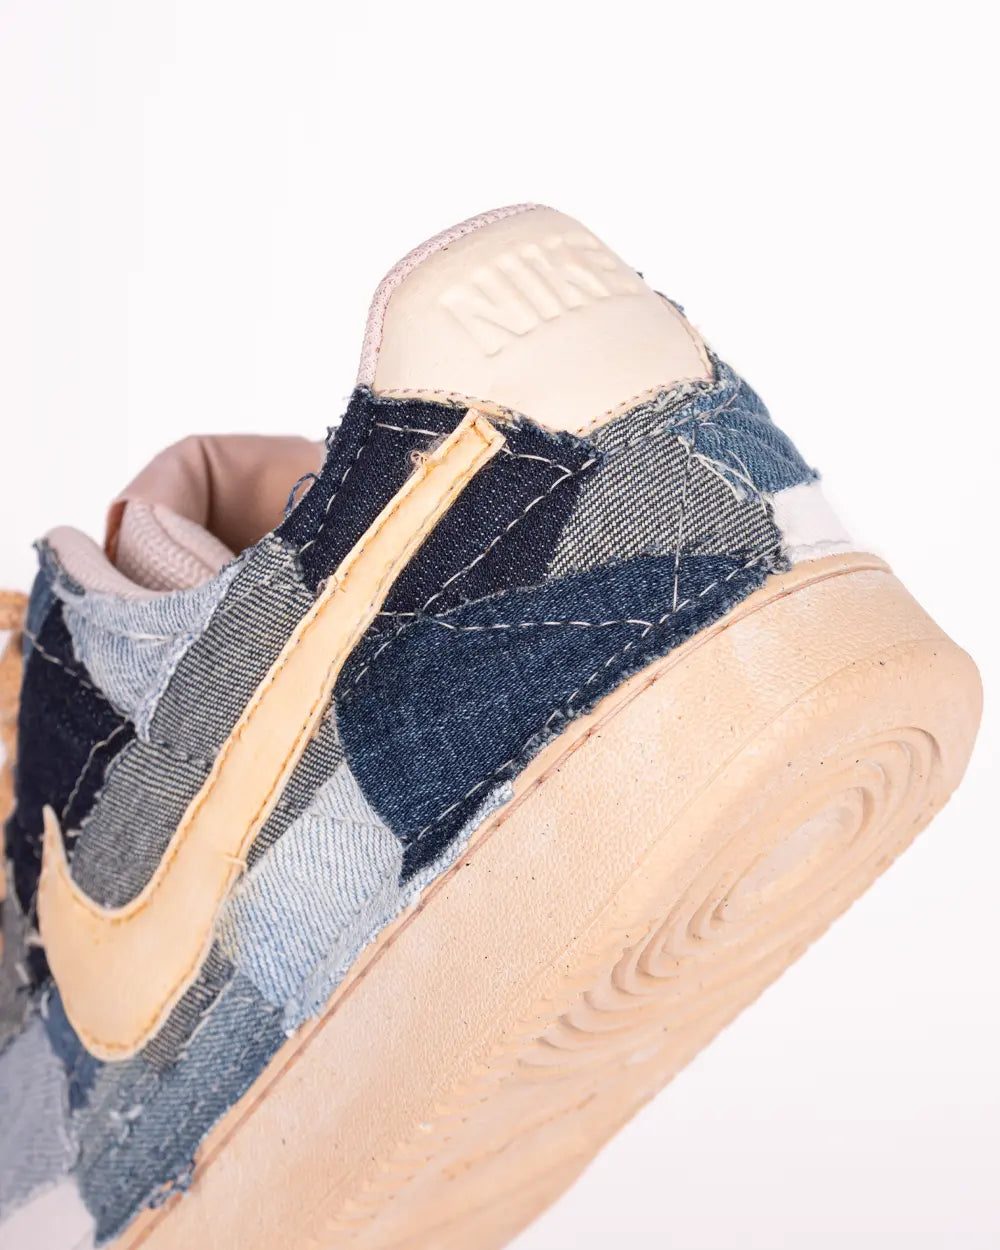 Nike Court Vision personalizzata con ritagli di tessuto Denim effetto Patchwork e tintura vintage, dettaglio tacco